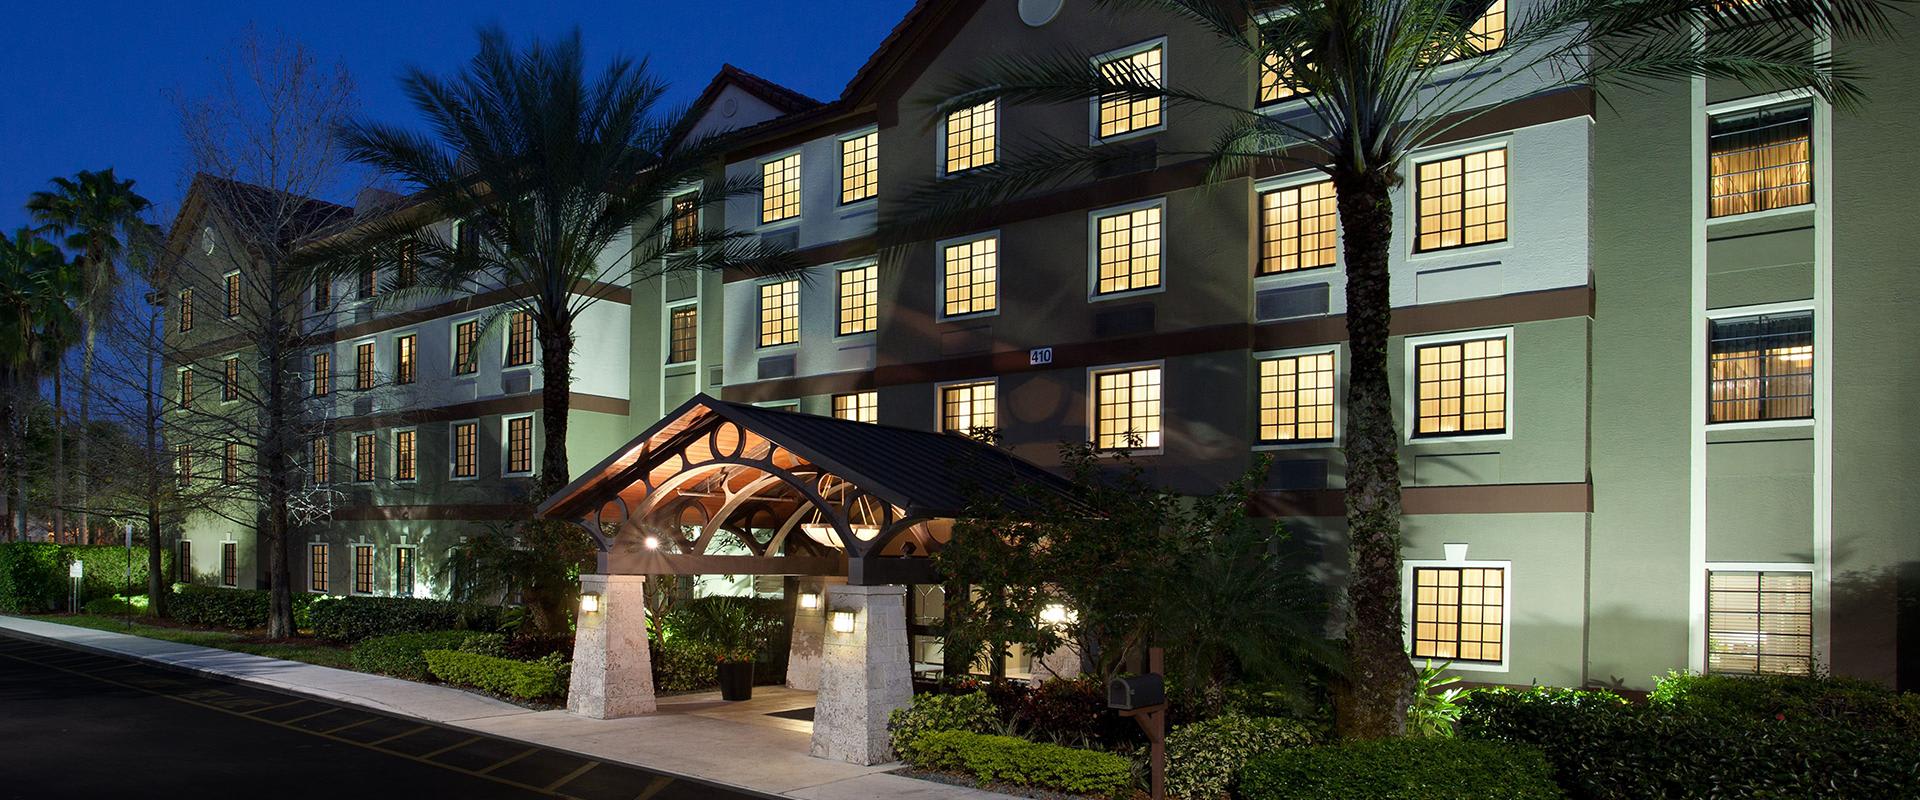 Extended Stay Hotel in Plantation Florida | Sonesta ES Suites Fort